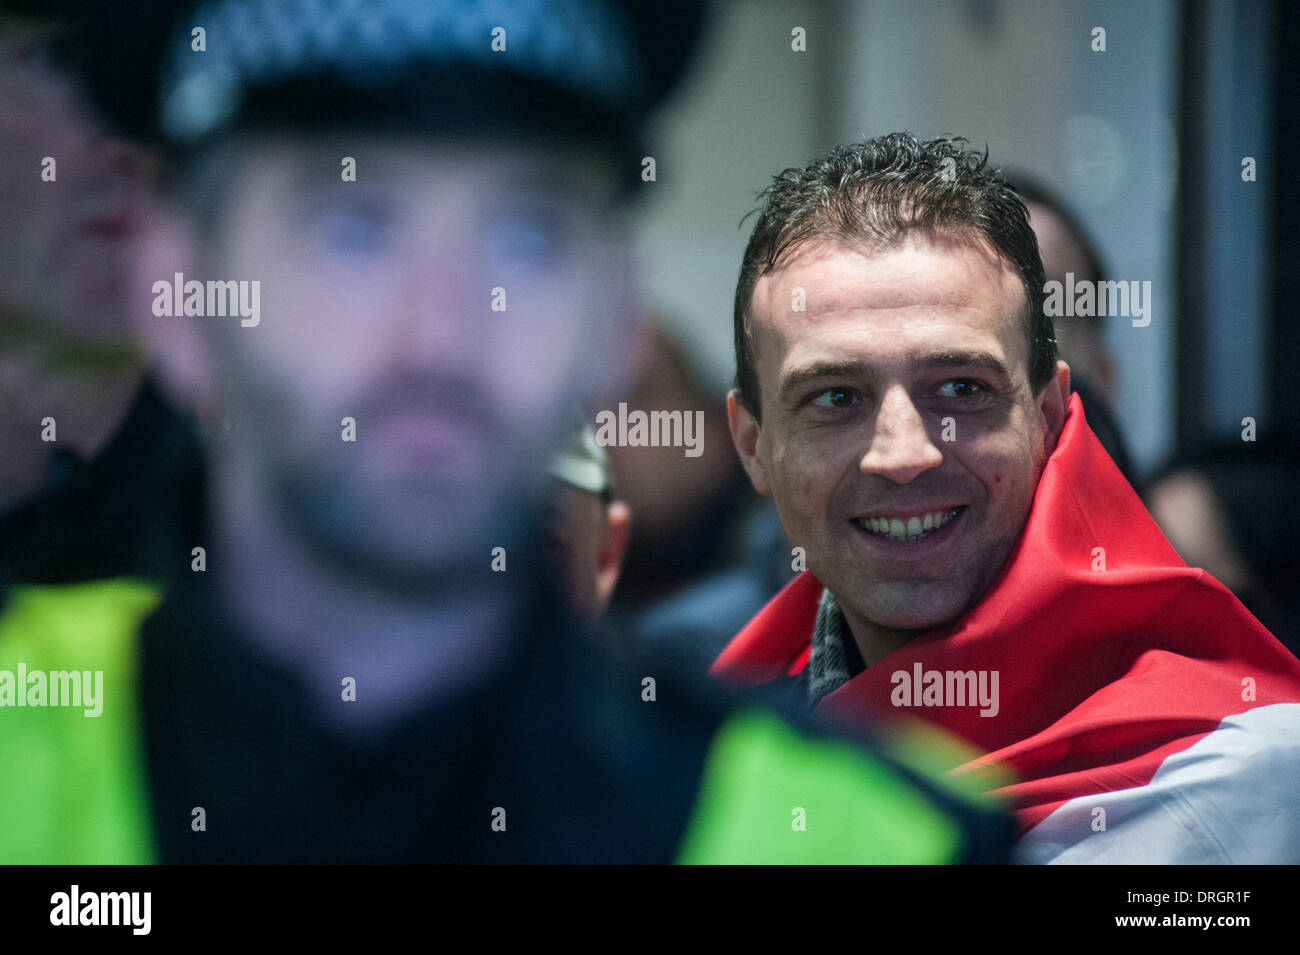 Londra, Regno Unito. 26 gen, 2014. sostenitori ungherese della estrema destra partito Jobbik sono detenuti da parte delle forze di polizia all'interno di Holborn tube station come anti-fascisti protestare fuori l'uscita. Credito: Piero Cruciatti/Alamy Live News Foto Stock